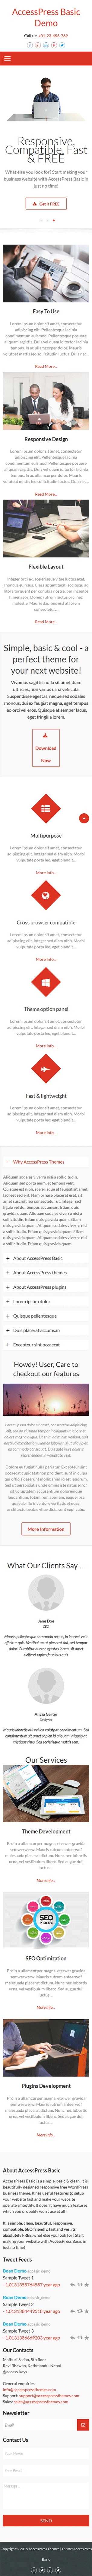 Accesspress Basic